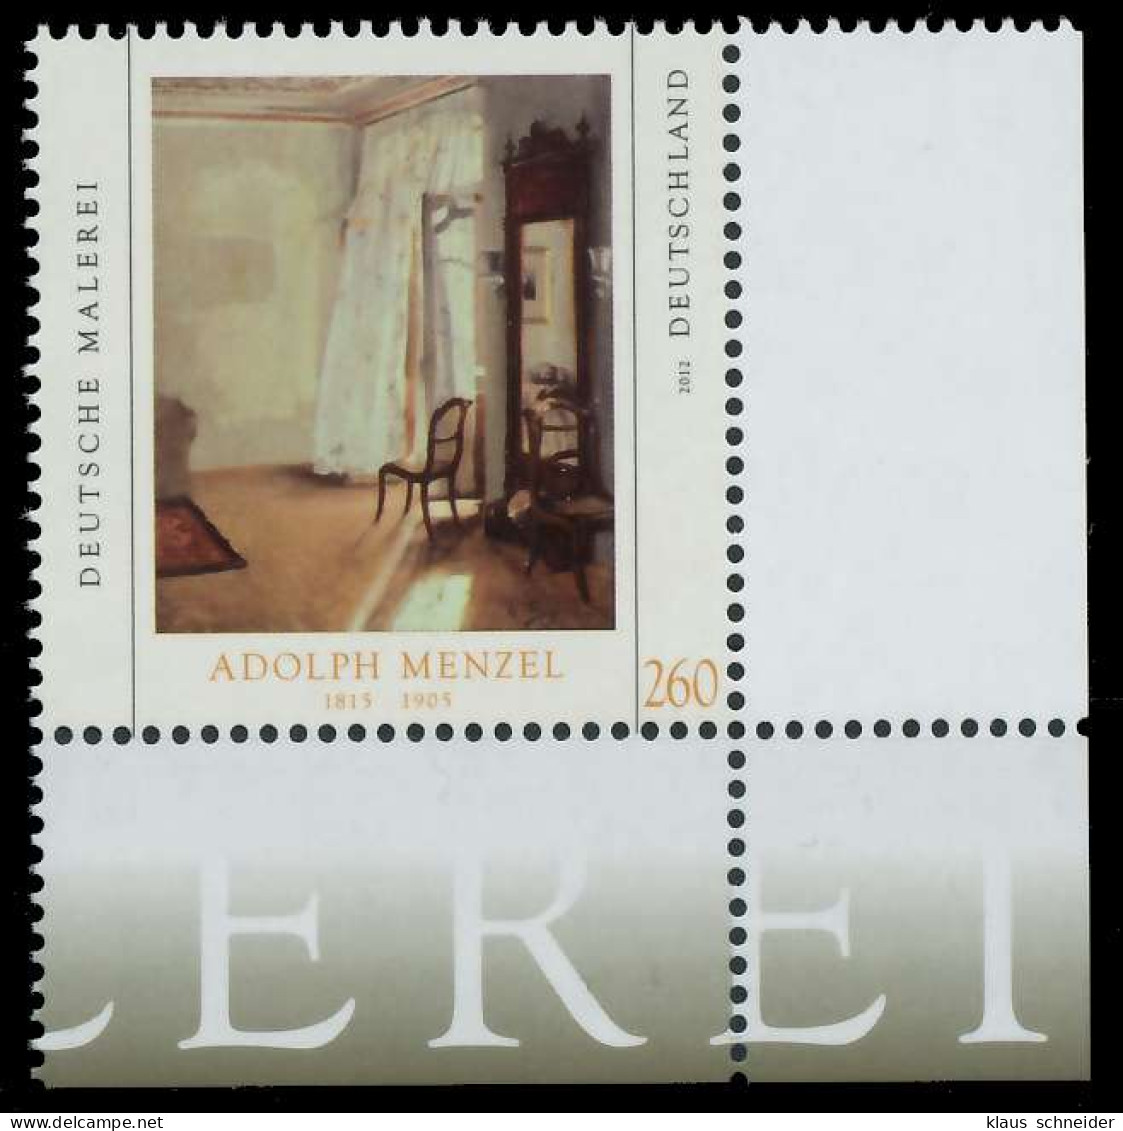 BRD BUND 2012 Nr 2937 Postfrisch ECKE-URE X325F42 - Unused Stamps